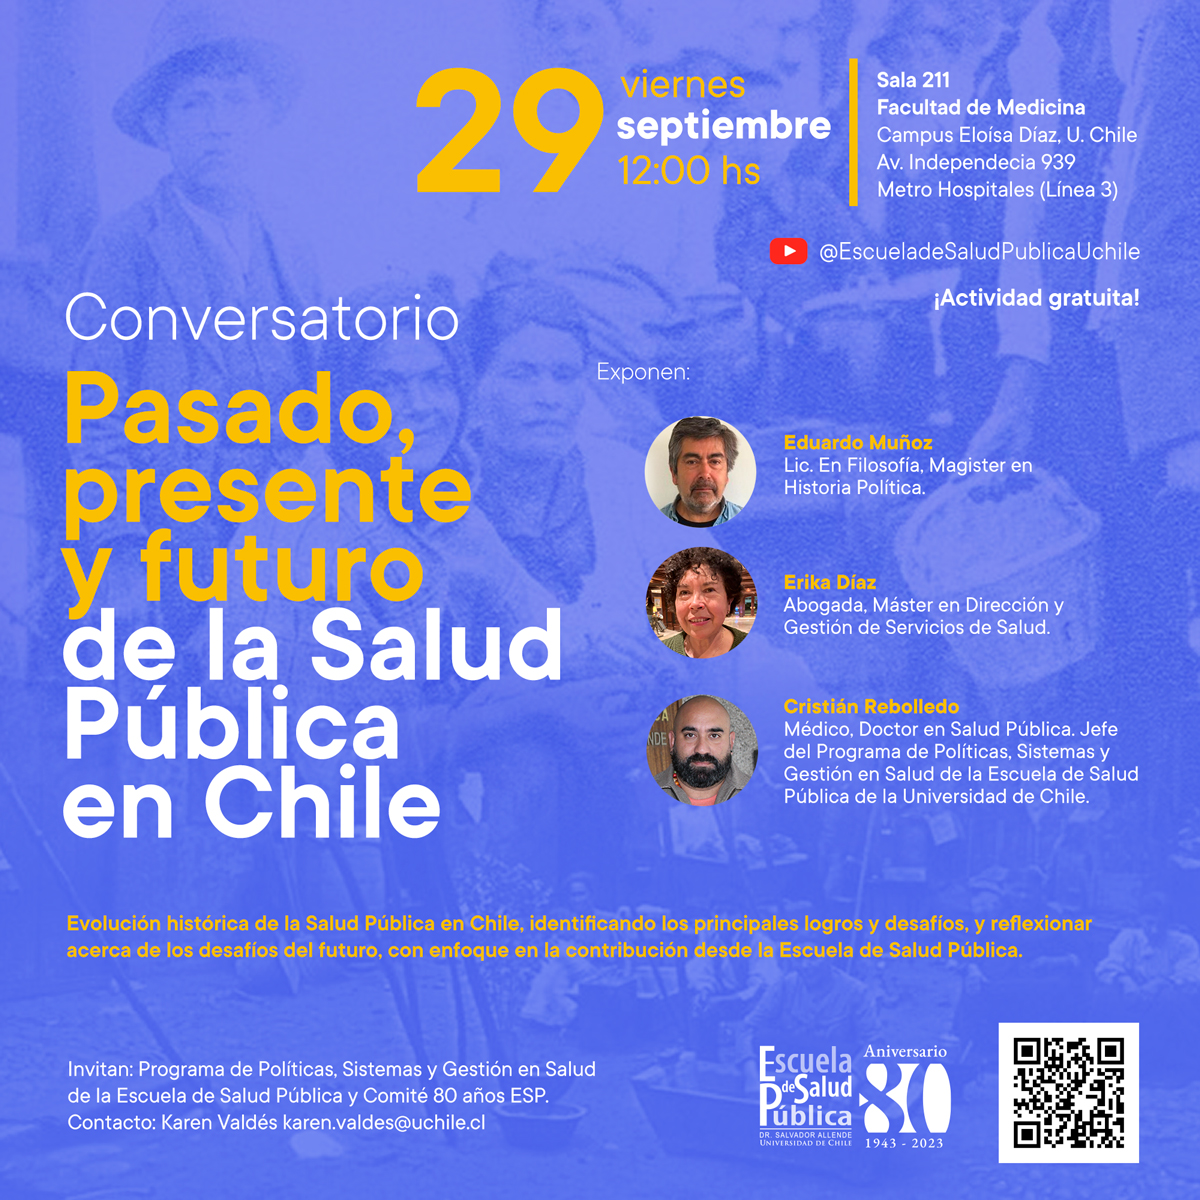 Conversatorio “Pasado, Presente y Futuro de la Salud Pública en Chile